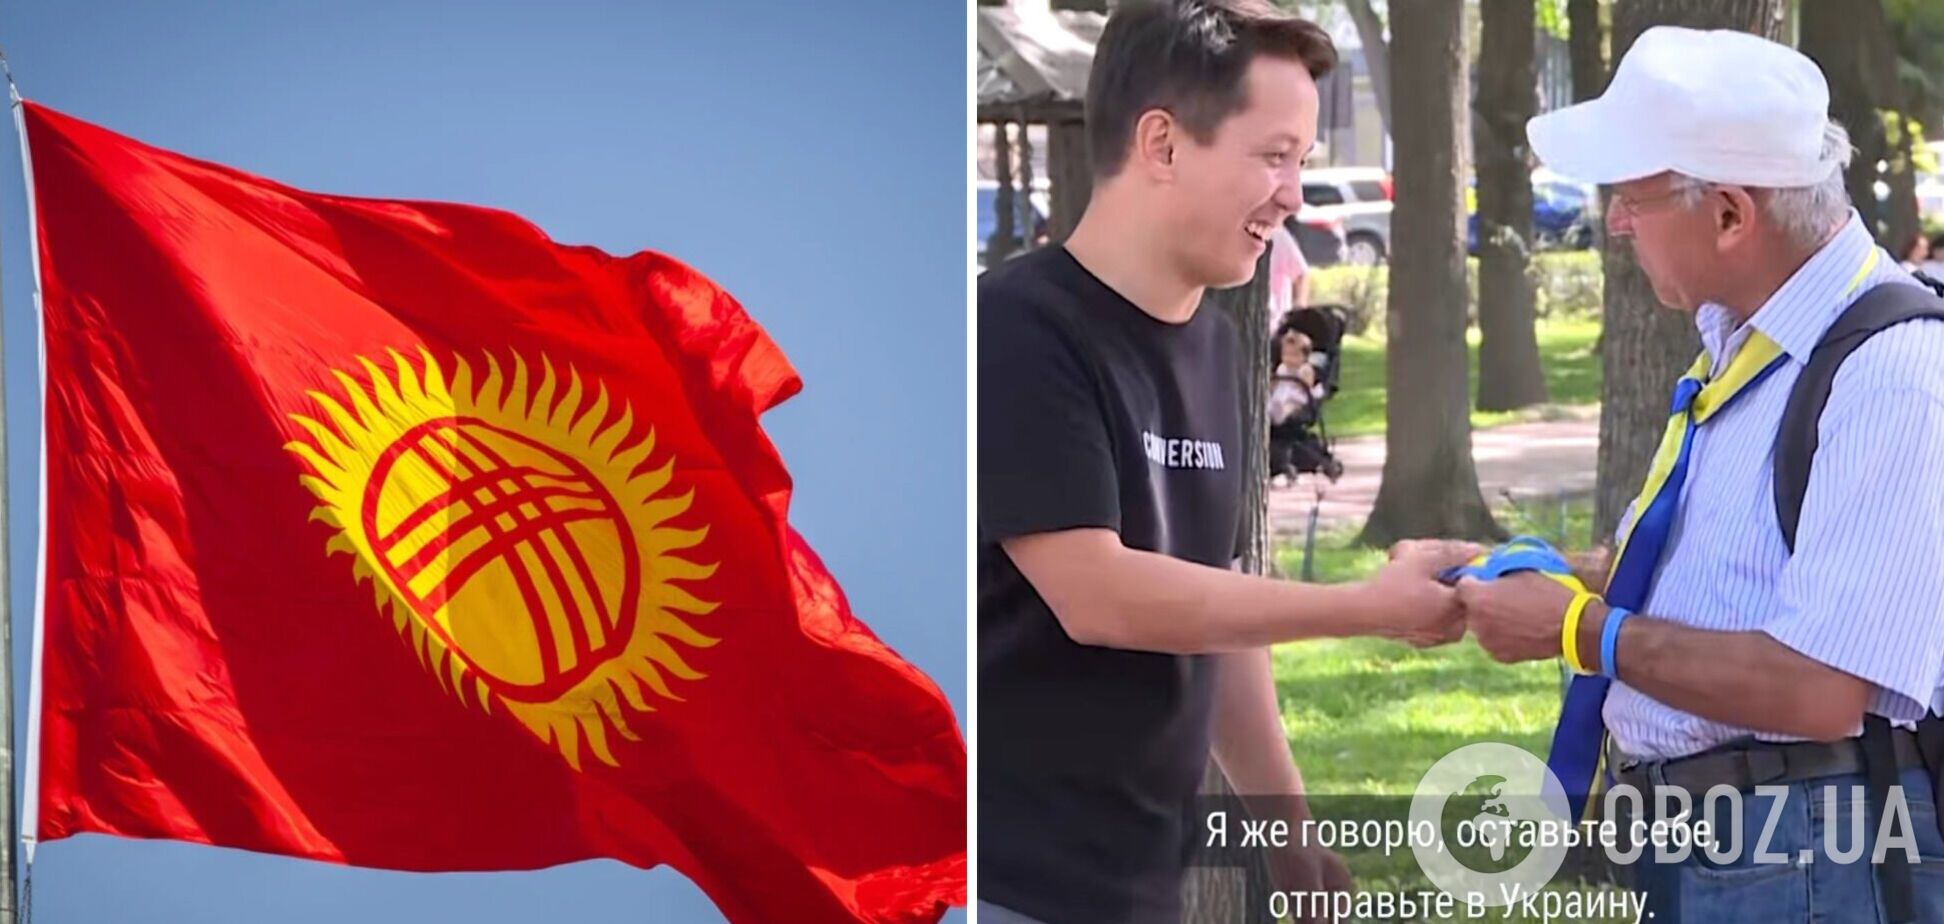 В Кыргызстане пенсионер продает браслеты в цветах украинского флага: на вырученные средства помогает ВСУ. Видео